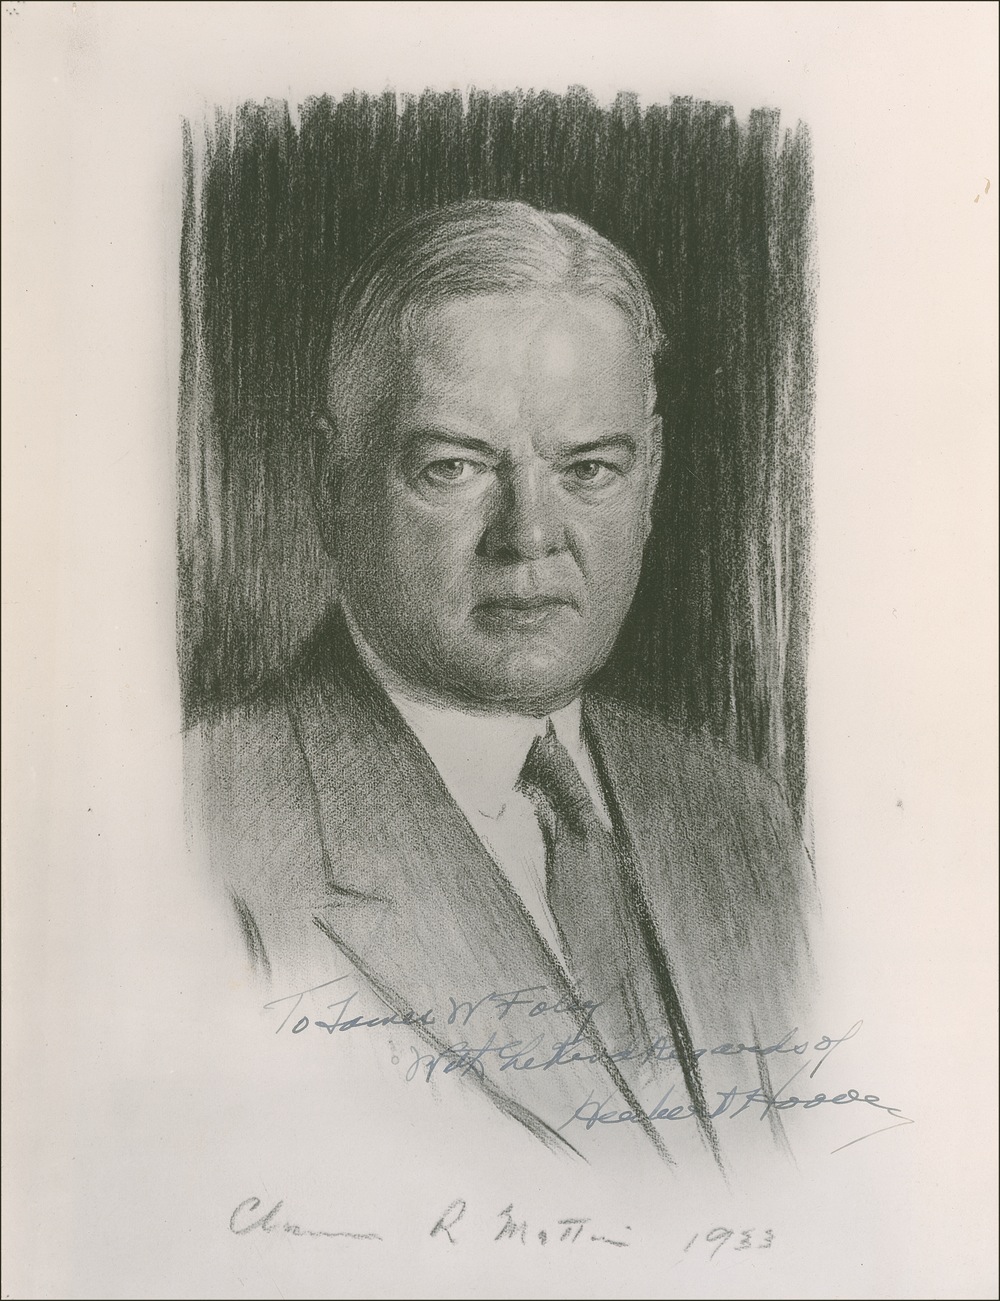 Lot #68 Herbert Hoover